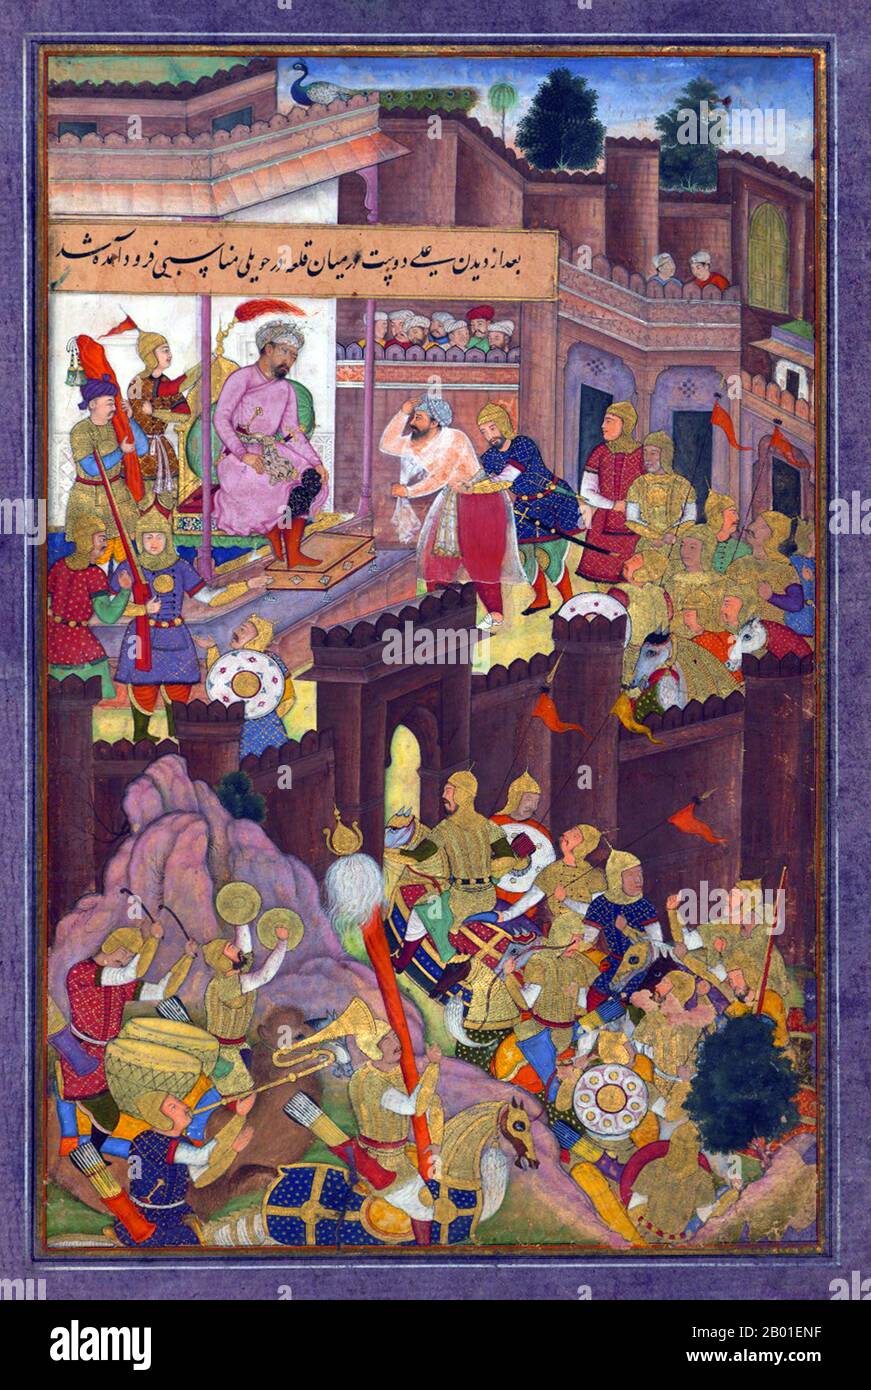 India: Dopo aver aperto le porte del Forte di Murghīnān, ʿAlī Dūst Ṭaghāyī rende omaggio a Babur. Dipinto in miniatura del Baburnama, fine 16th ° secolo. Bāburnāma (letteralmente: 'Libro di Babur' o 'lettere di Babur'; altrimenti conosciuto come Tuzk-e Babri) è il nome dato alle memorie di Ẓahīr ud-Dīn Muḥammad Bābur (1483-1530), fondatore dell'Impero Mughal e bisnonno di Timur. Si tratta di un'opera autobiografica, originariamente scritta in lingua Chagatai, nota a Babur come 'Turki' (che significa Turkic), la lingua parlata degli Andijan-Timuridi. Foto Stock